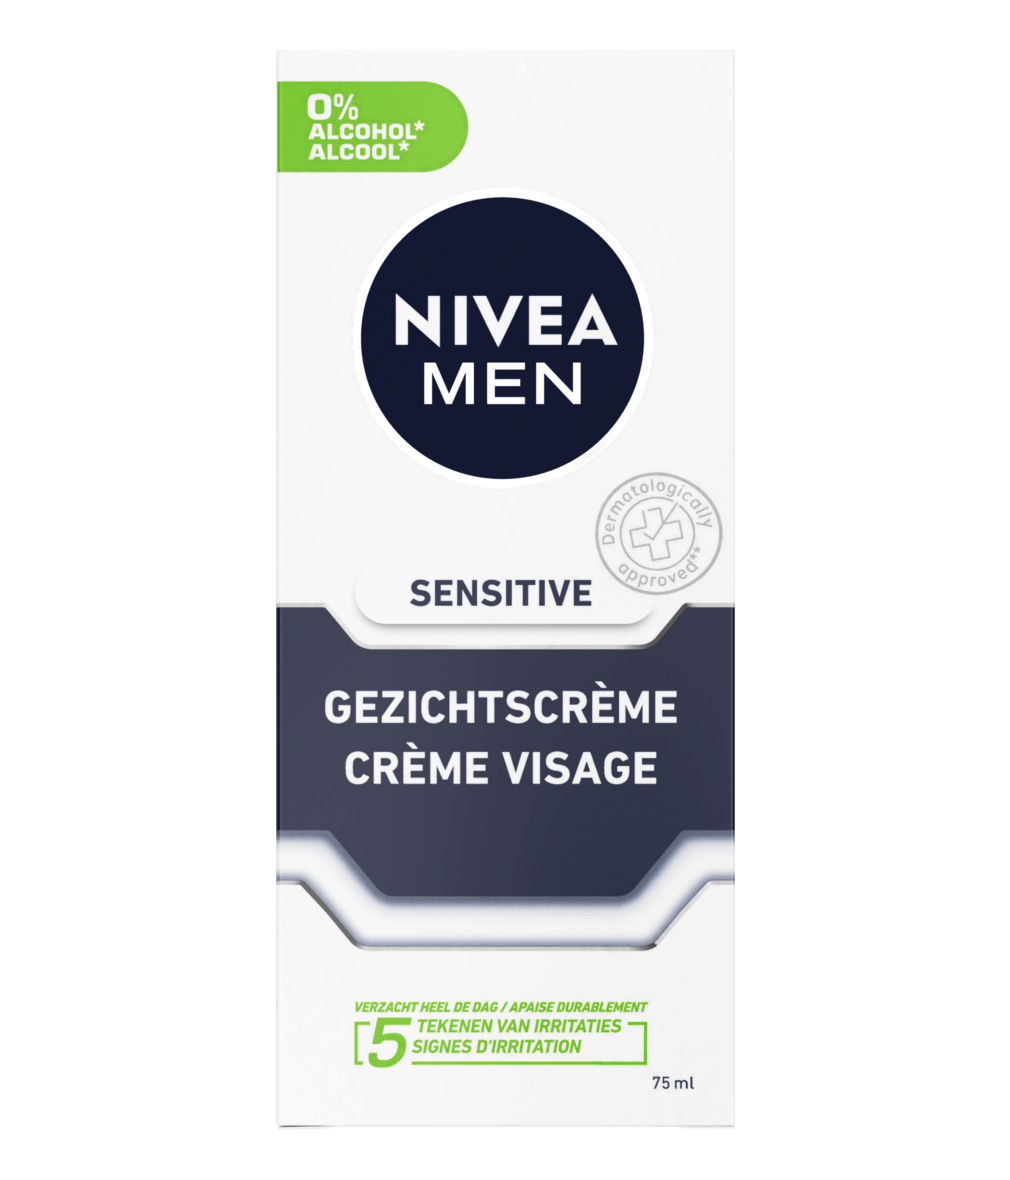 Omgekeerde Pardon etiket Sensitive Gezichtscrème – Directe verlichting – NIVEA MEN